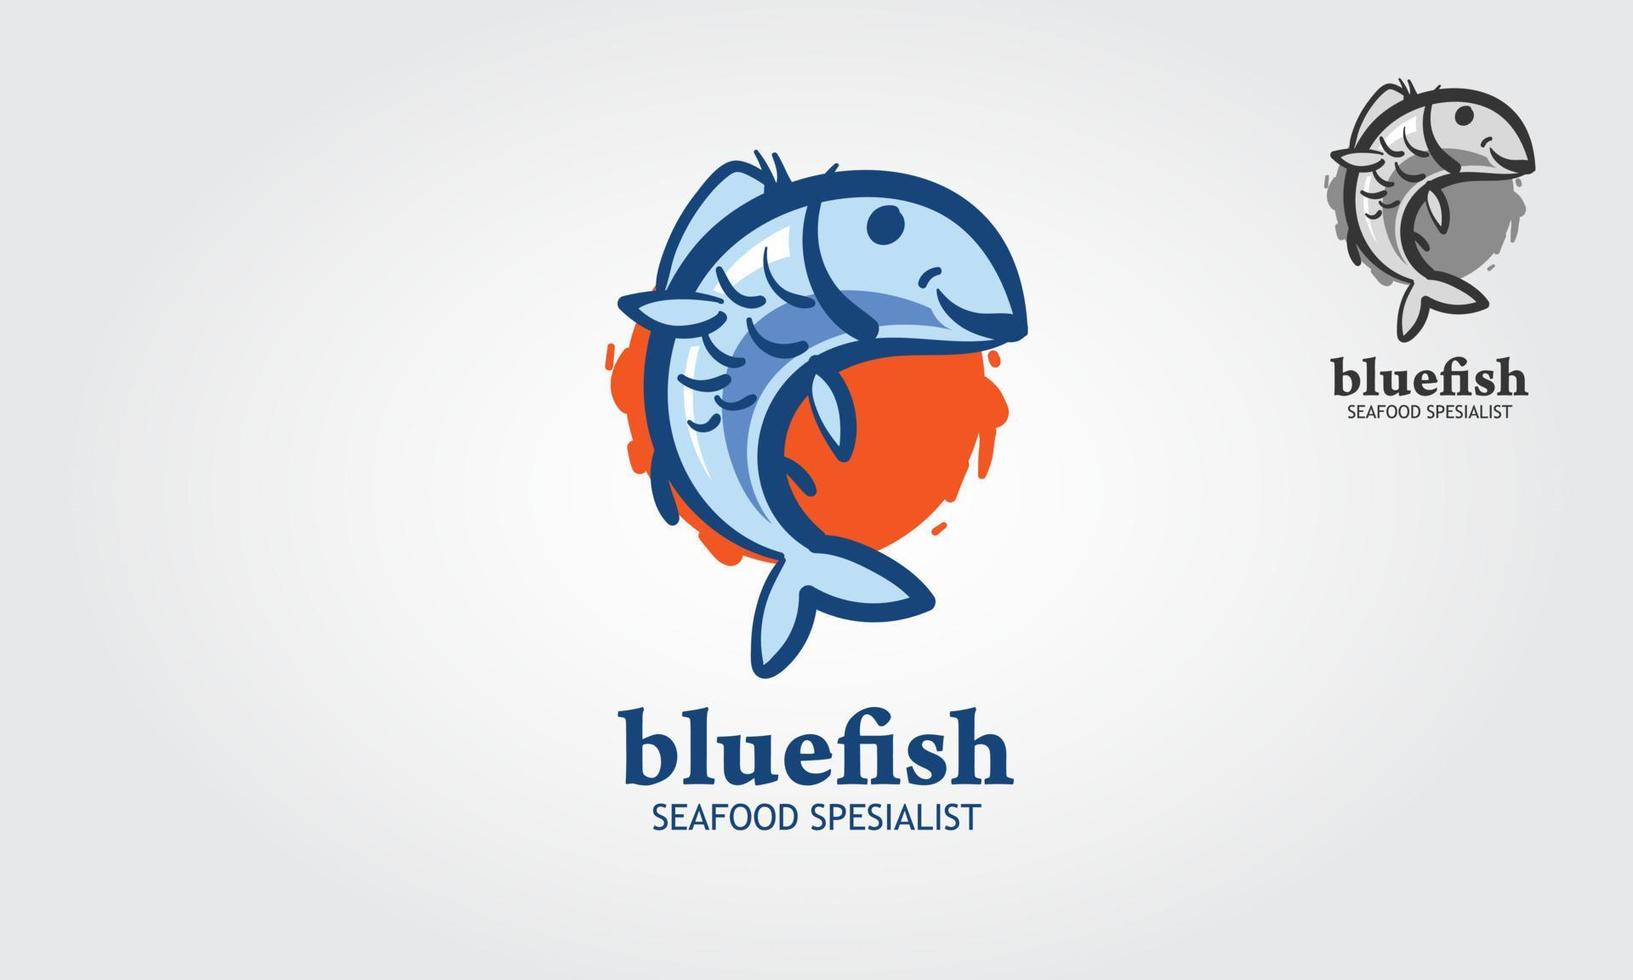 Vektor-Logo-Vorlage für Spezialisten für blaue Fische und Meeresfrüchte. Dies ist ein Fischvektor, den Sie als Logo, Designelement und perfekt für alle Fischerei- oder Aquarienunternehmen verwenden können. vektor